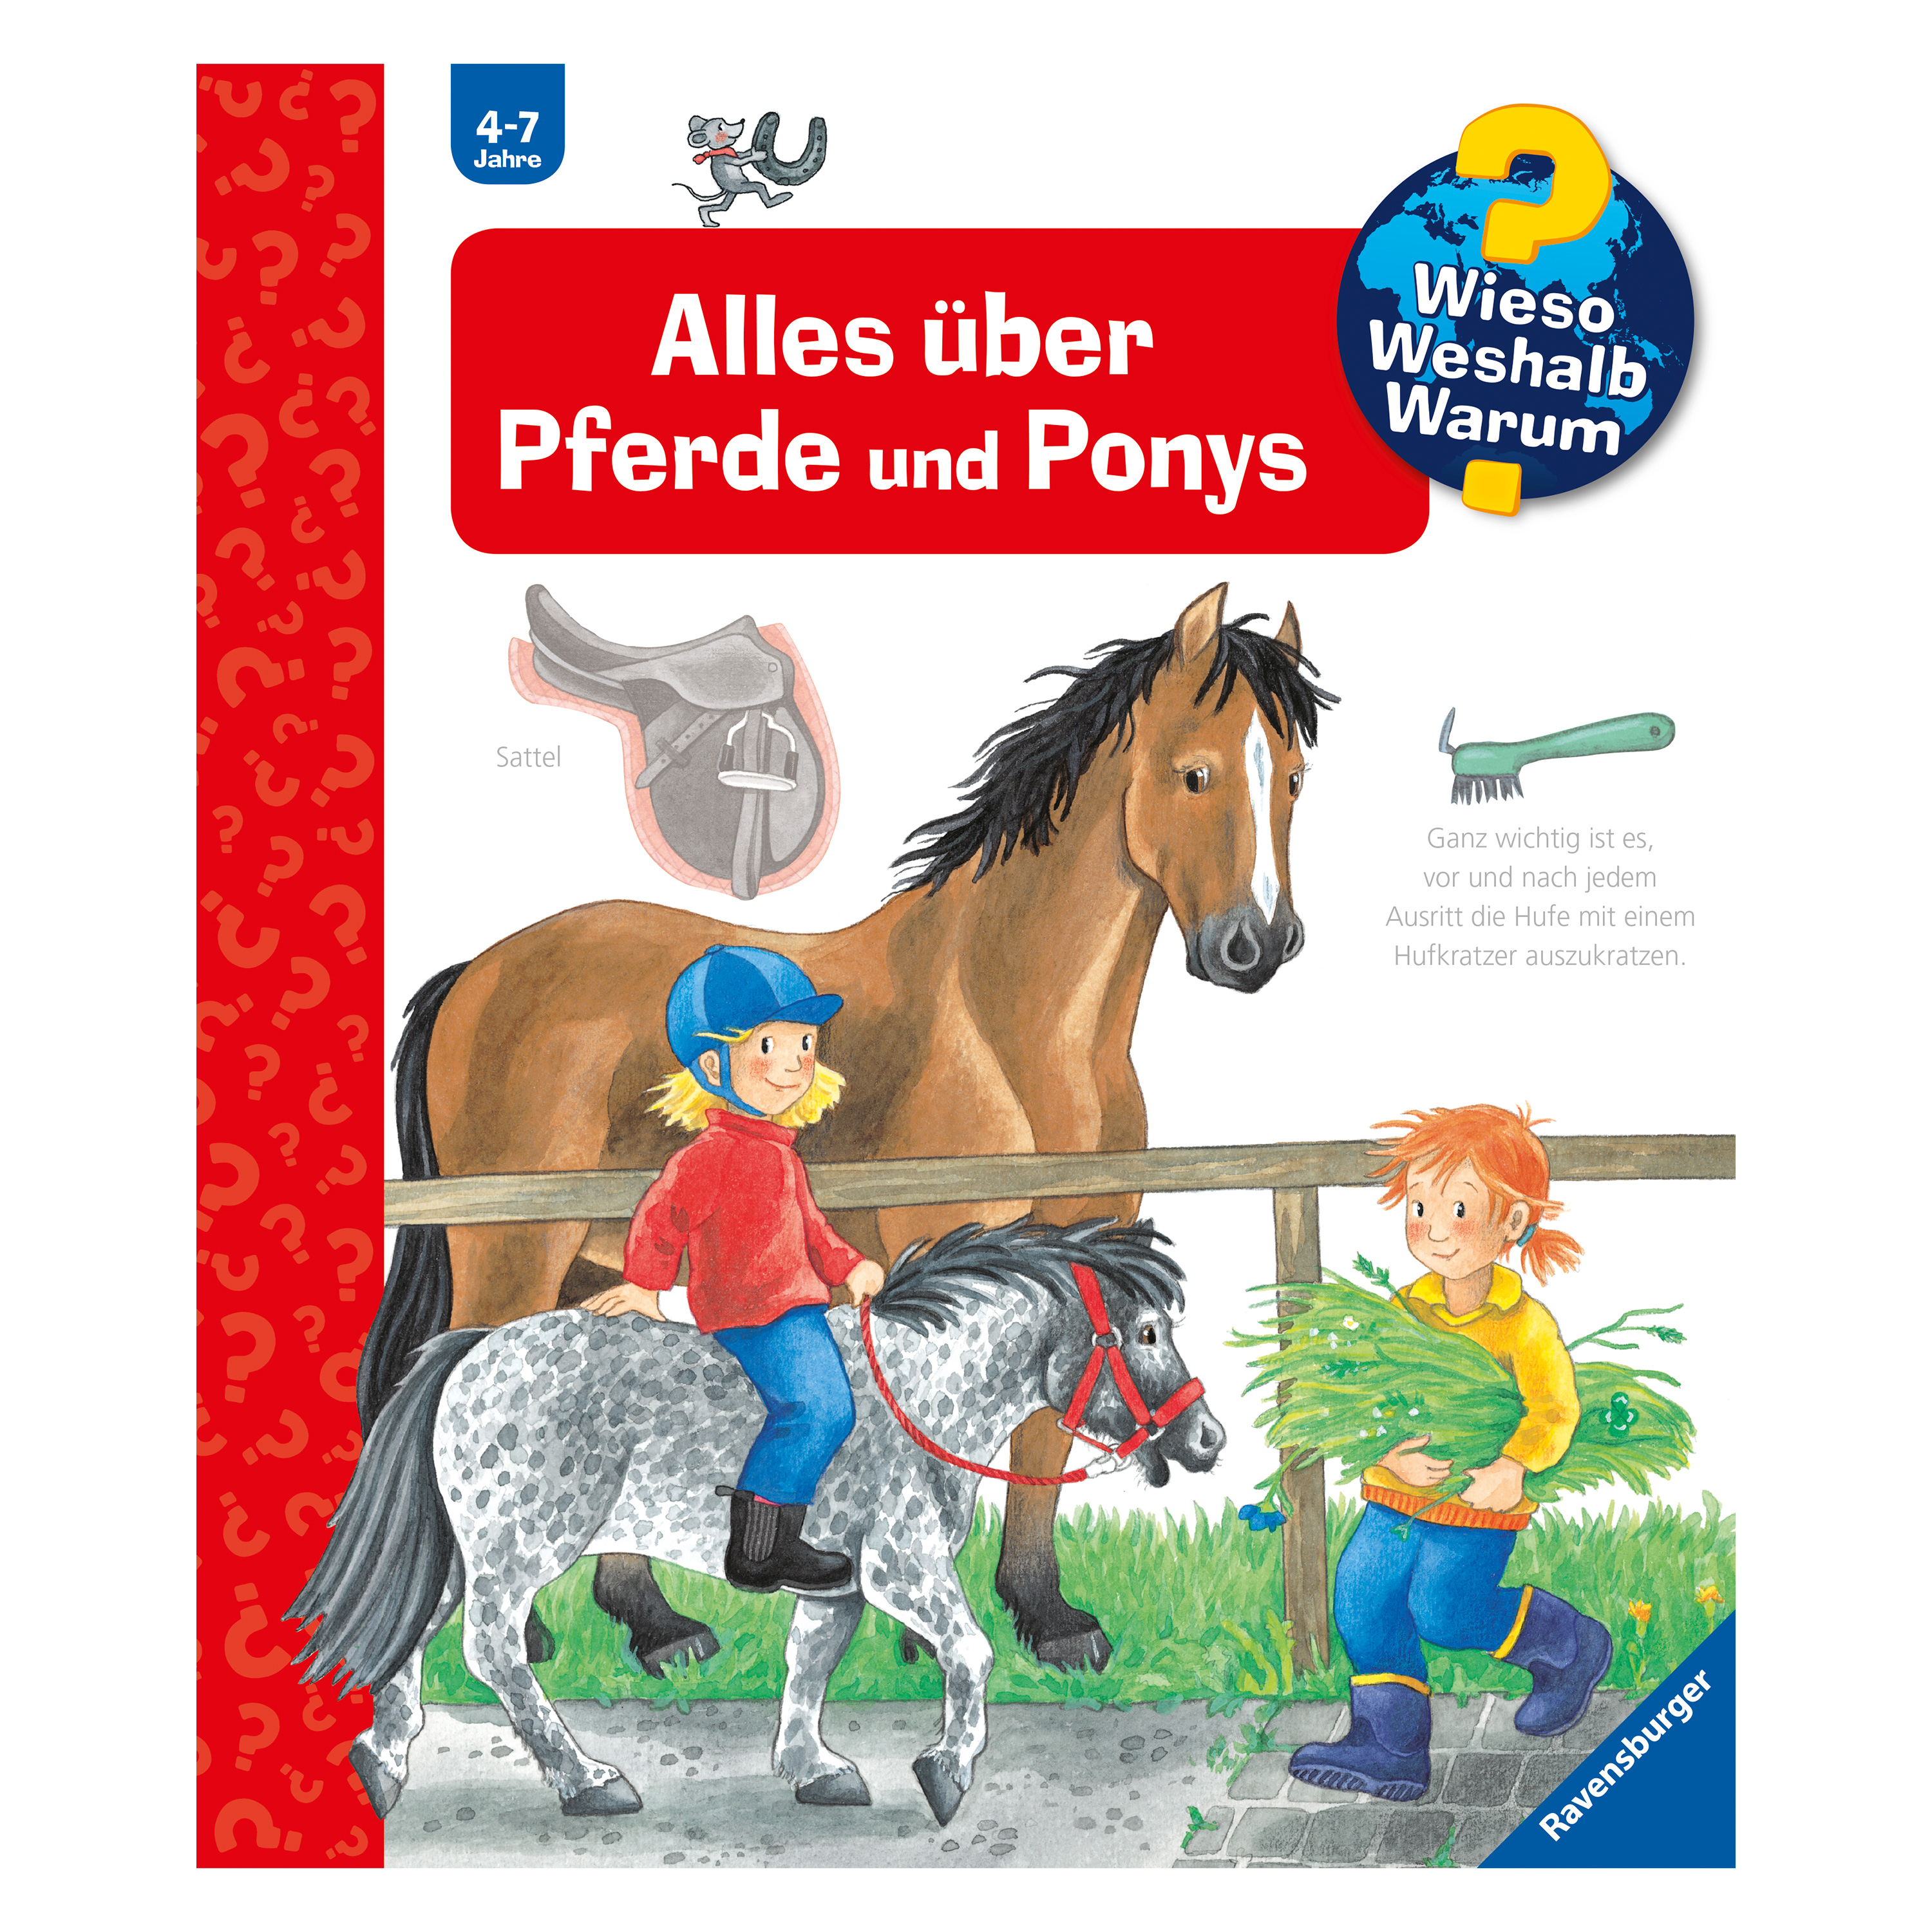 WWW 'Alles über Pferde und Ponys' (Bd. 21)